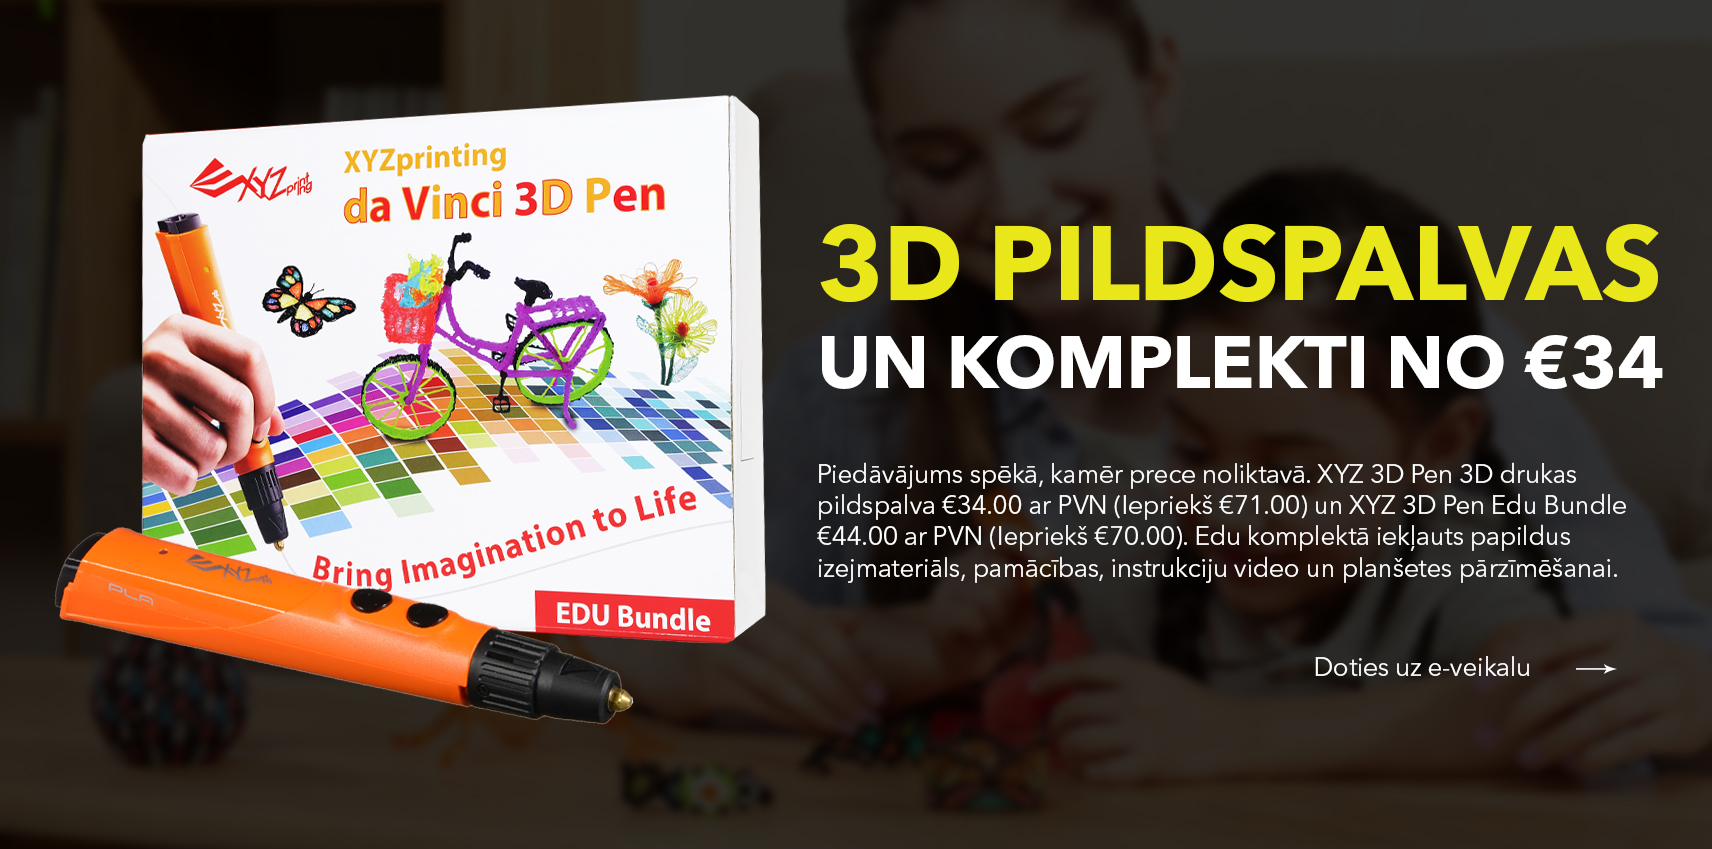 3D pildspalvas izpārdošana. 3D pildsaplva tikai 34 Eur un 3D pildspalvas komplekts